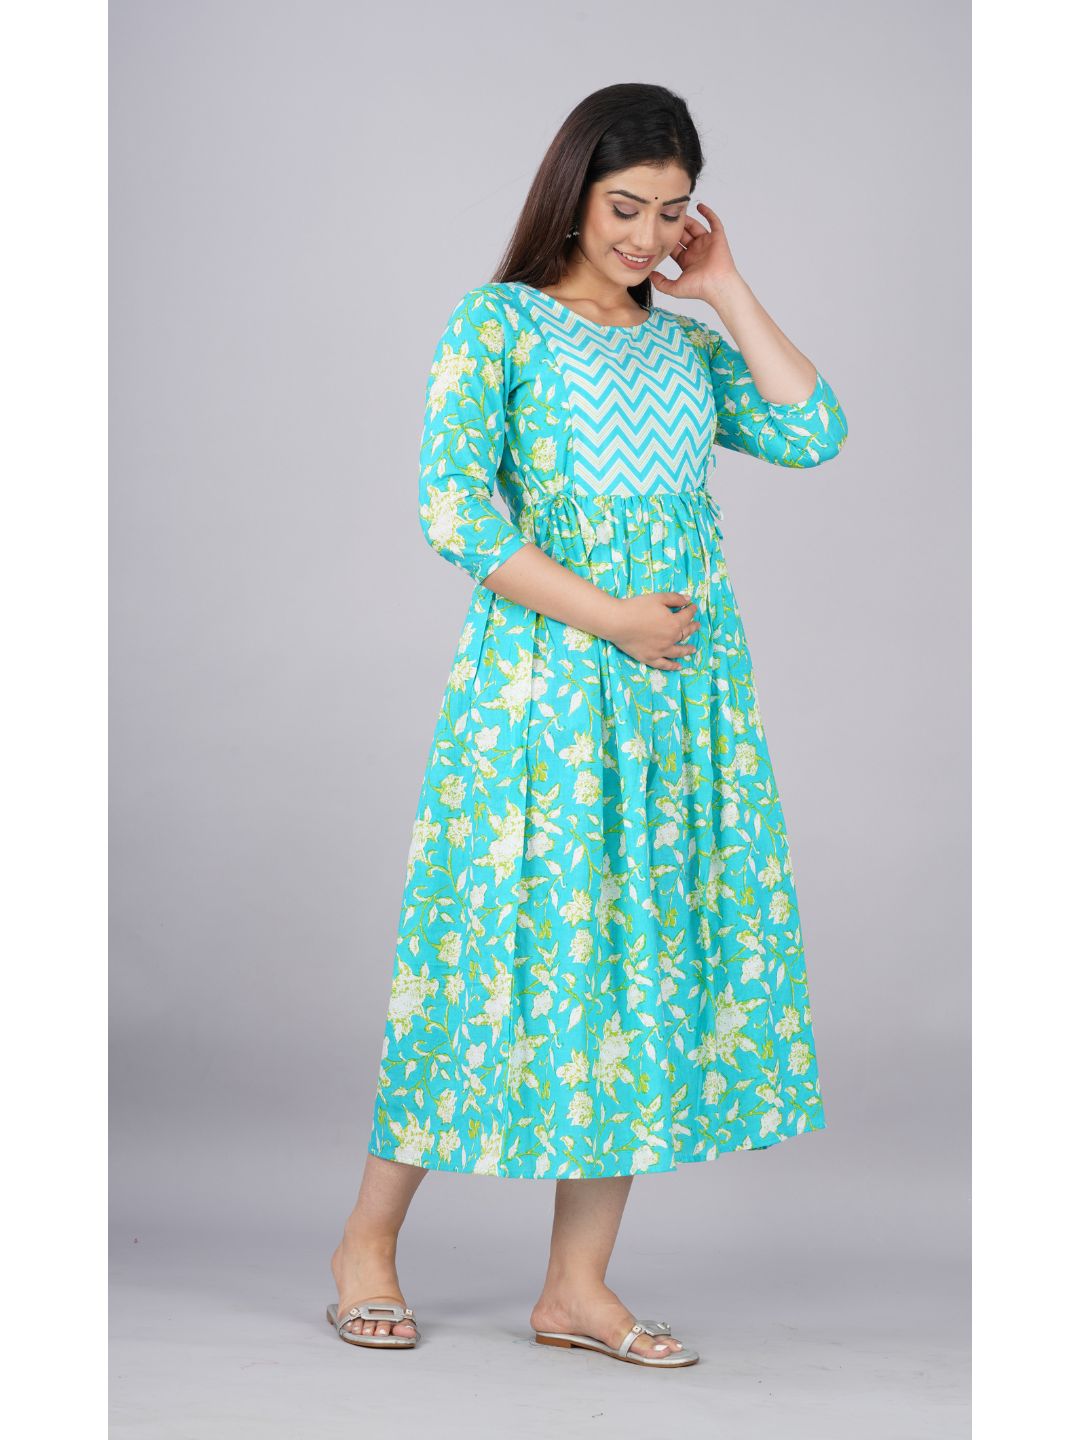 Cyan-Floral-Print-Cotton-Maternity-Dress